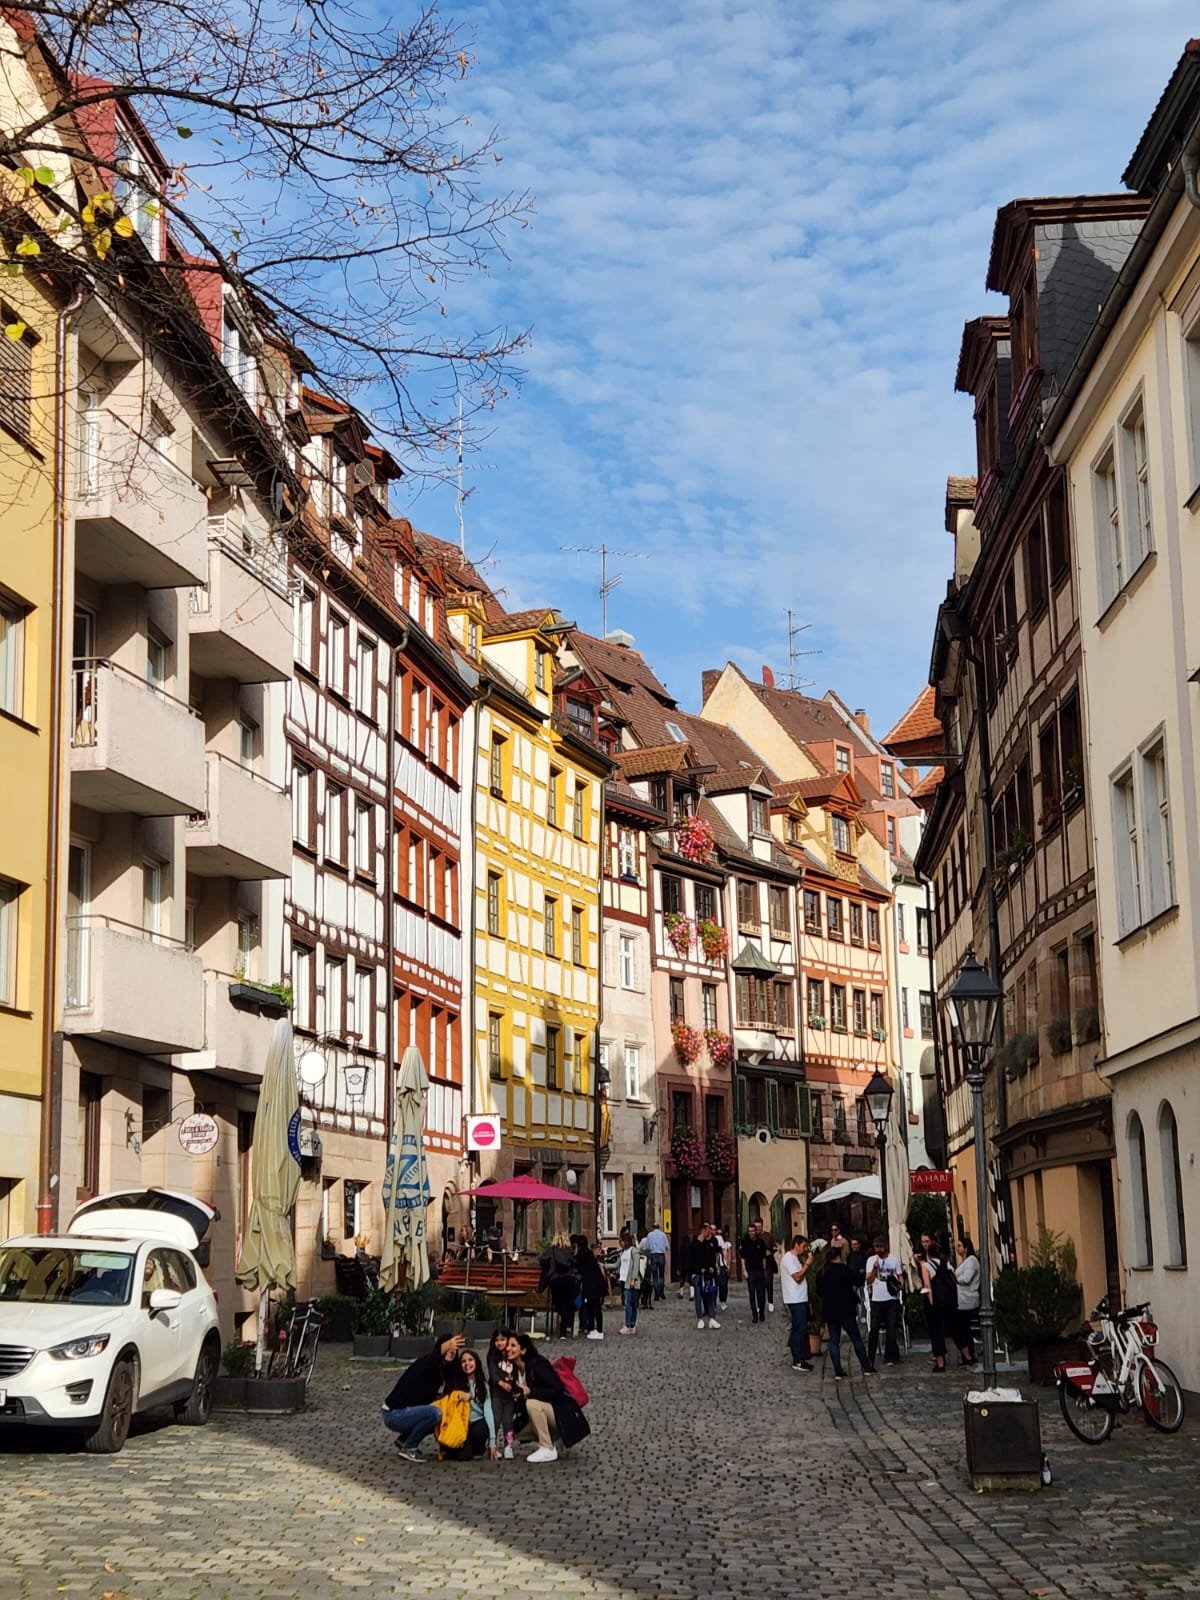   Nuremberg’s Old Town  